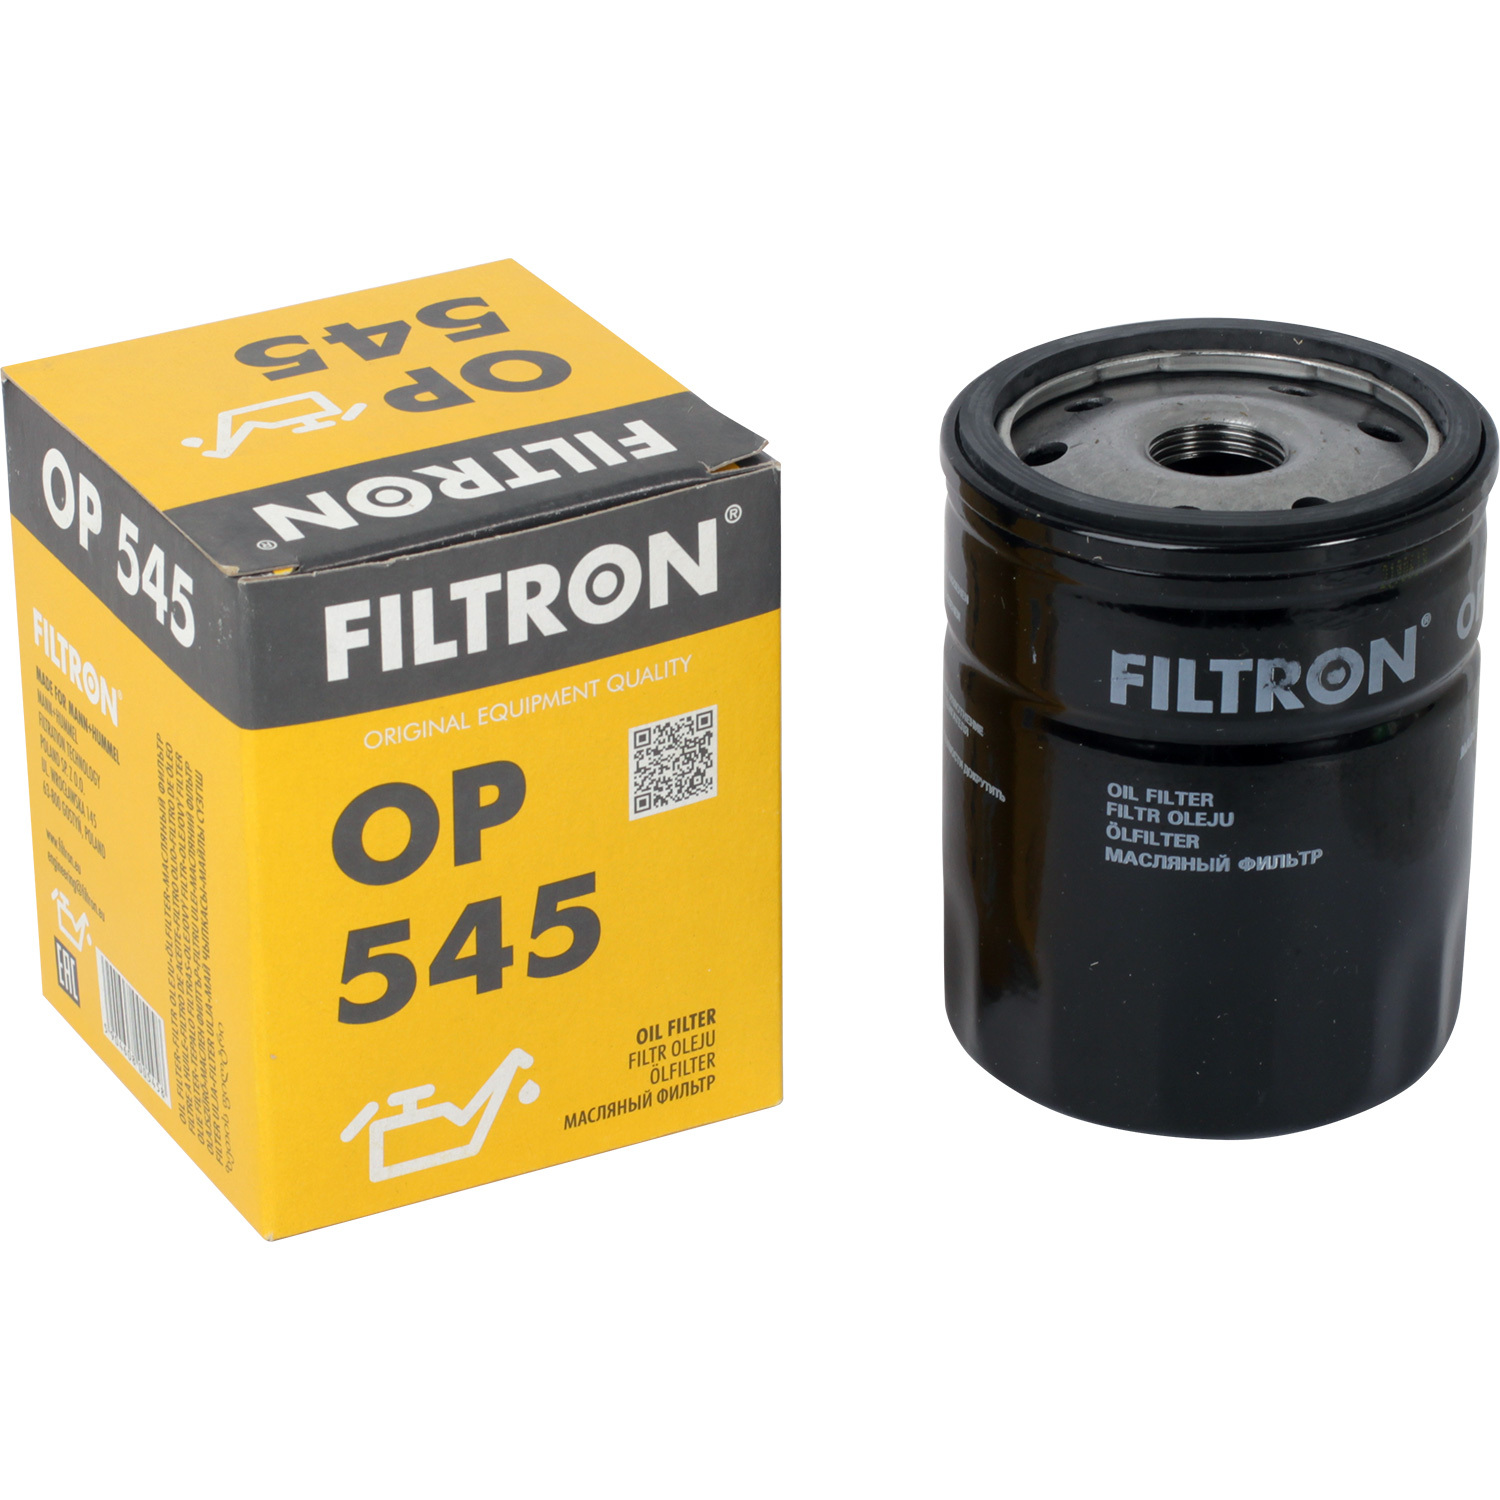 фильтры filtron фильтр масляный filtron oe671 Фильтры Filtron Фильтр масляный Filtron OP545